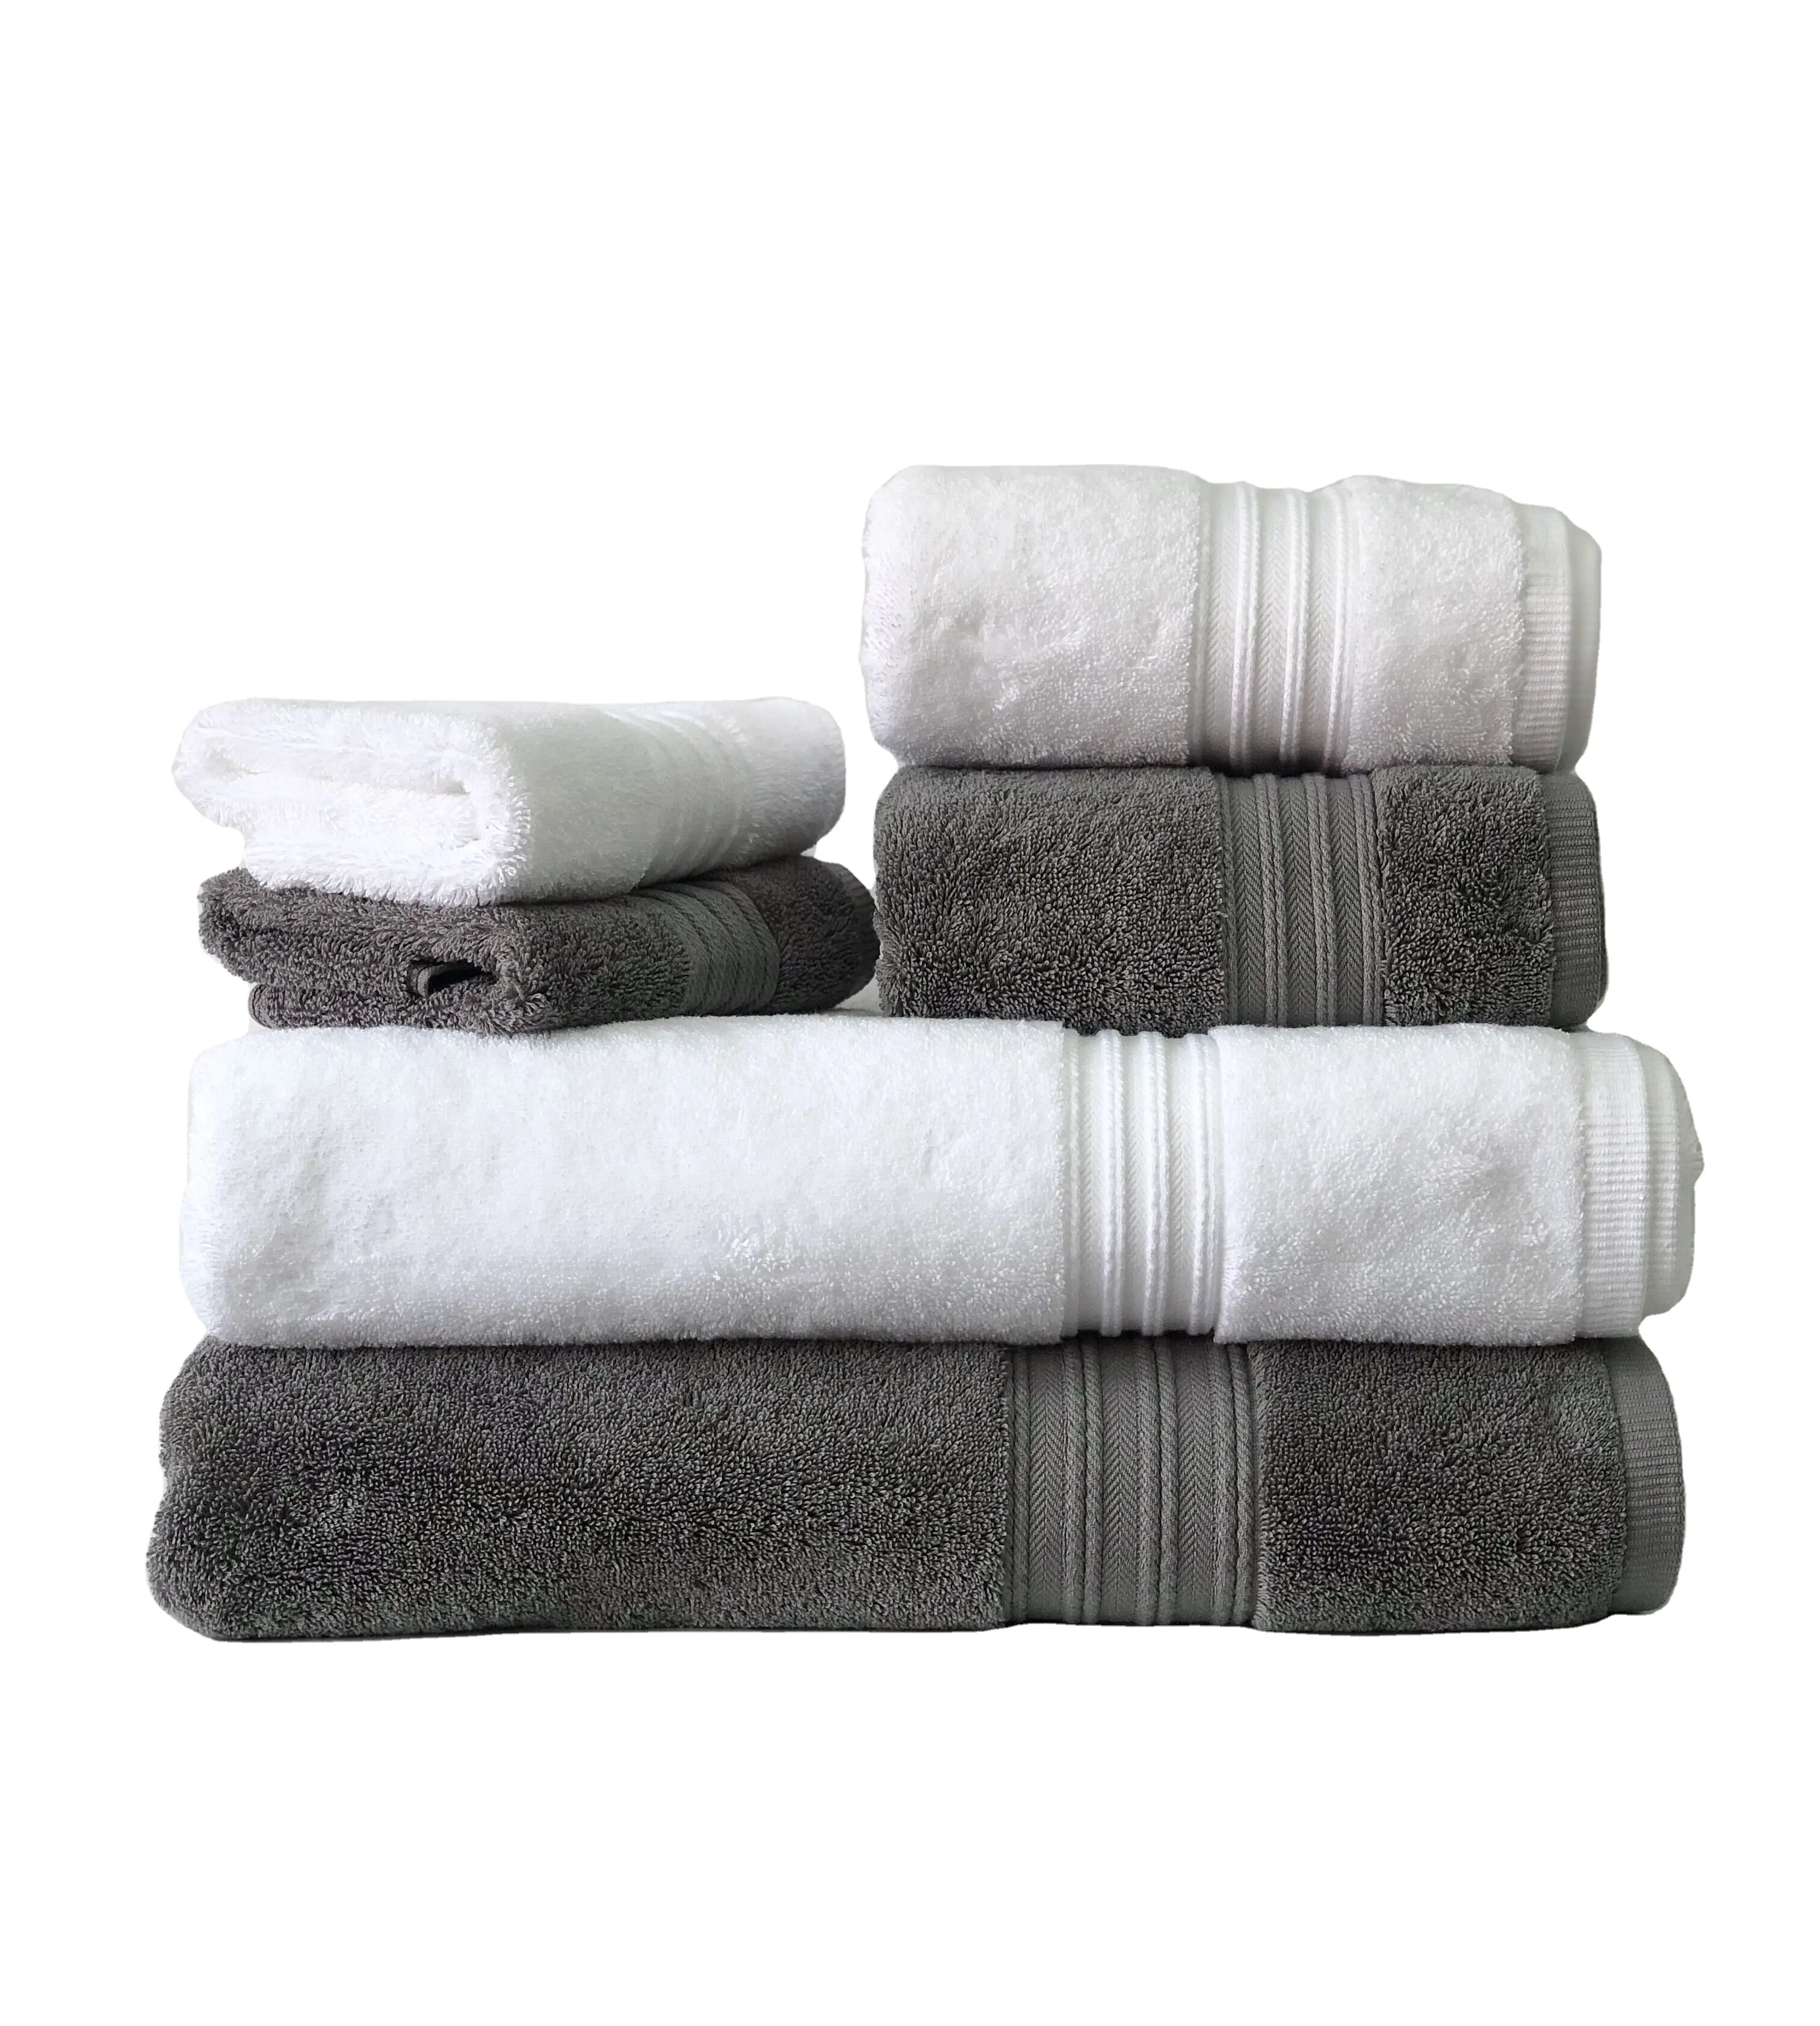 ชุดผ้าเช็ดตัวผ้าฝ้ายเช็ดมือในโรงแรมผ้าคอตตอนเนื้อนุ่มและซึมซับได้ดีปักตามสั่ง100%